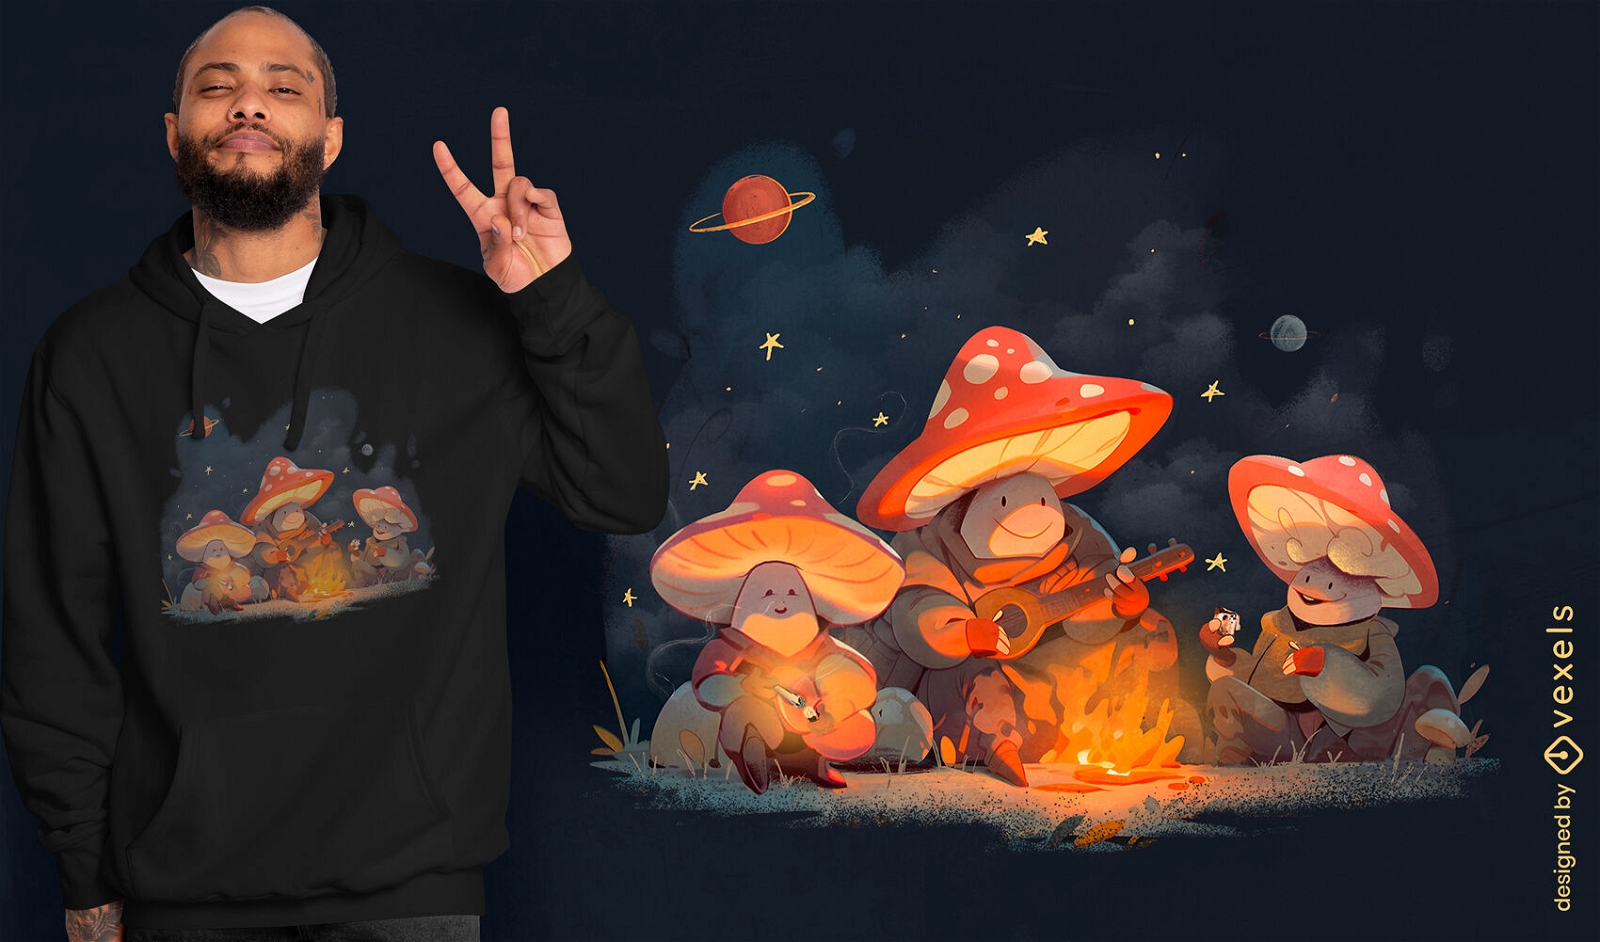 Mushroom camping fantasy t-shirt design